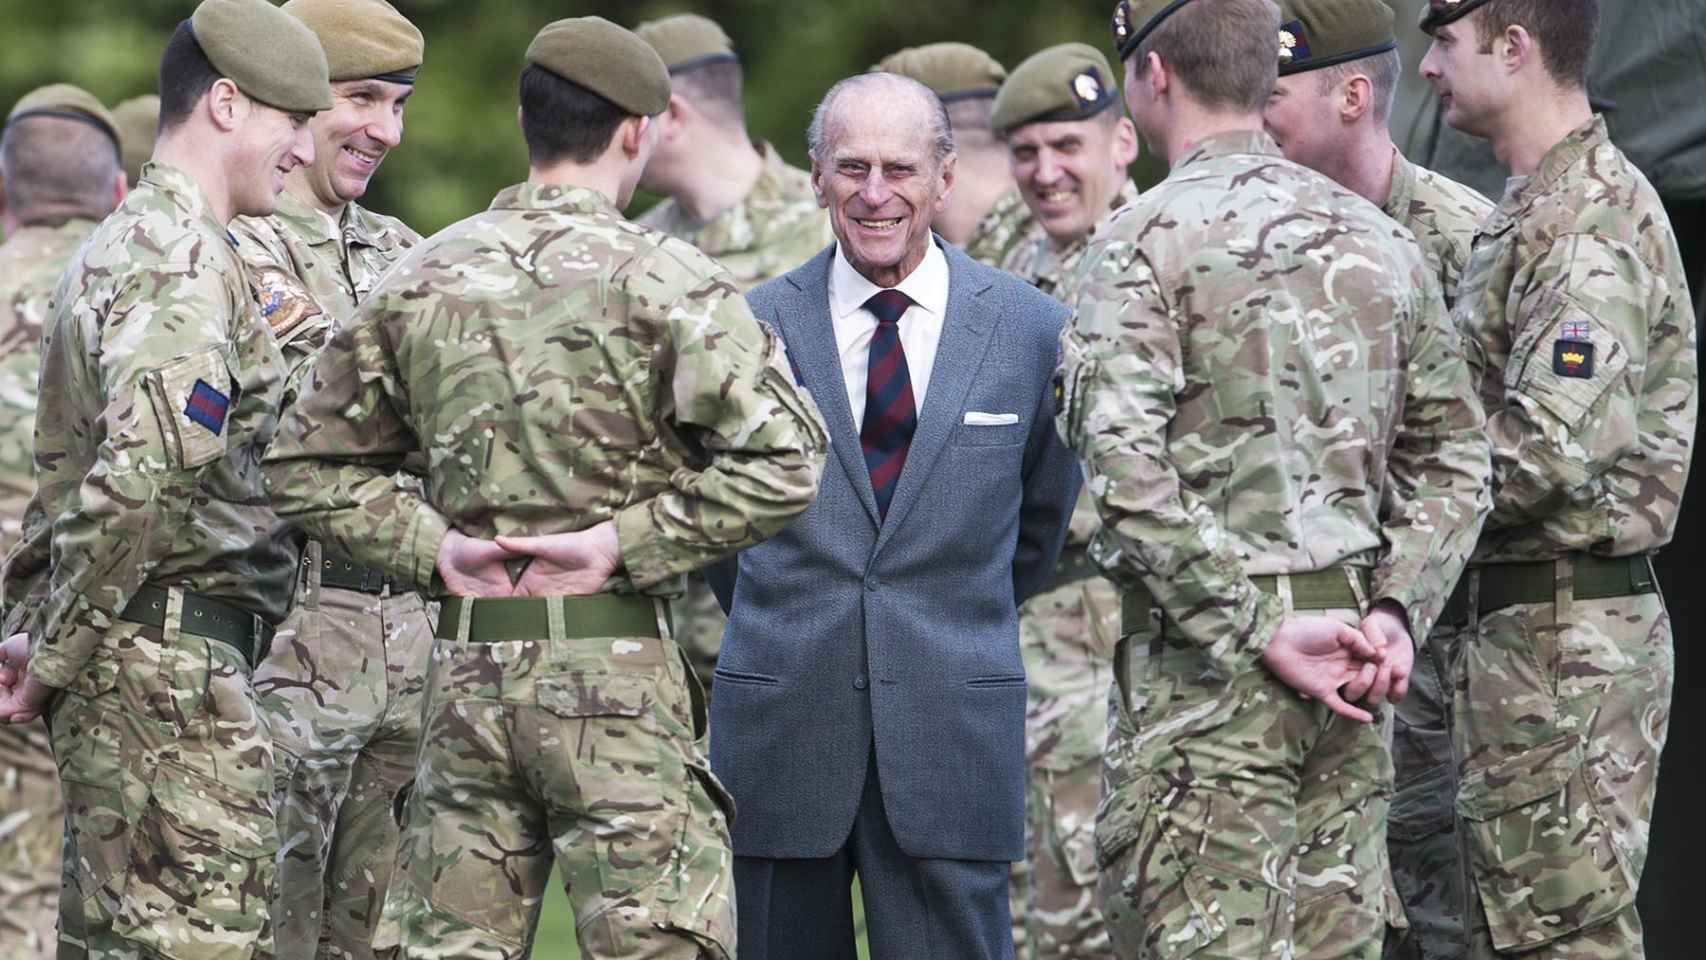 El duque de Edimburgo con los soldados.